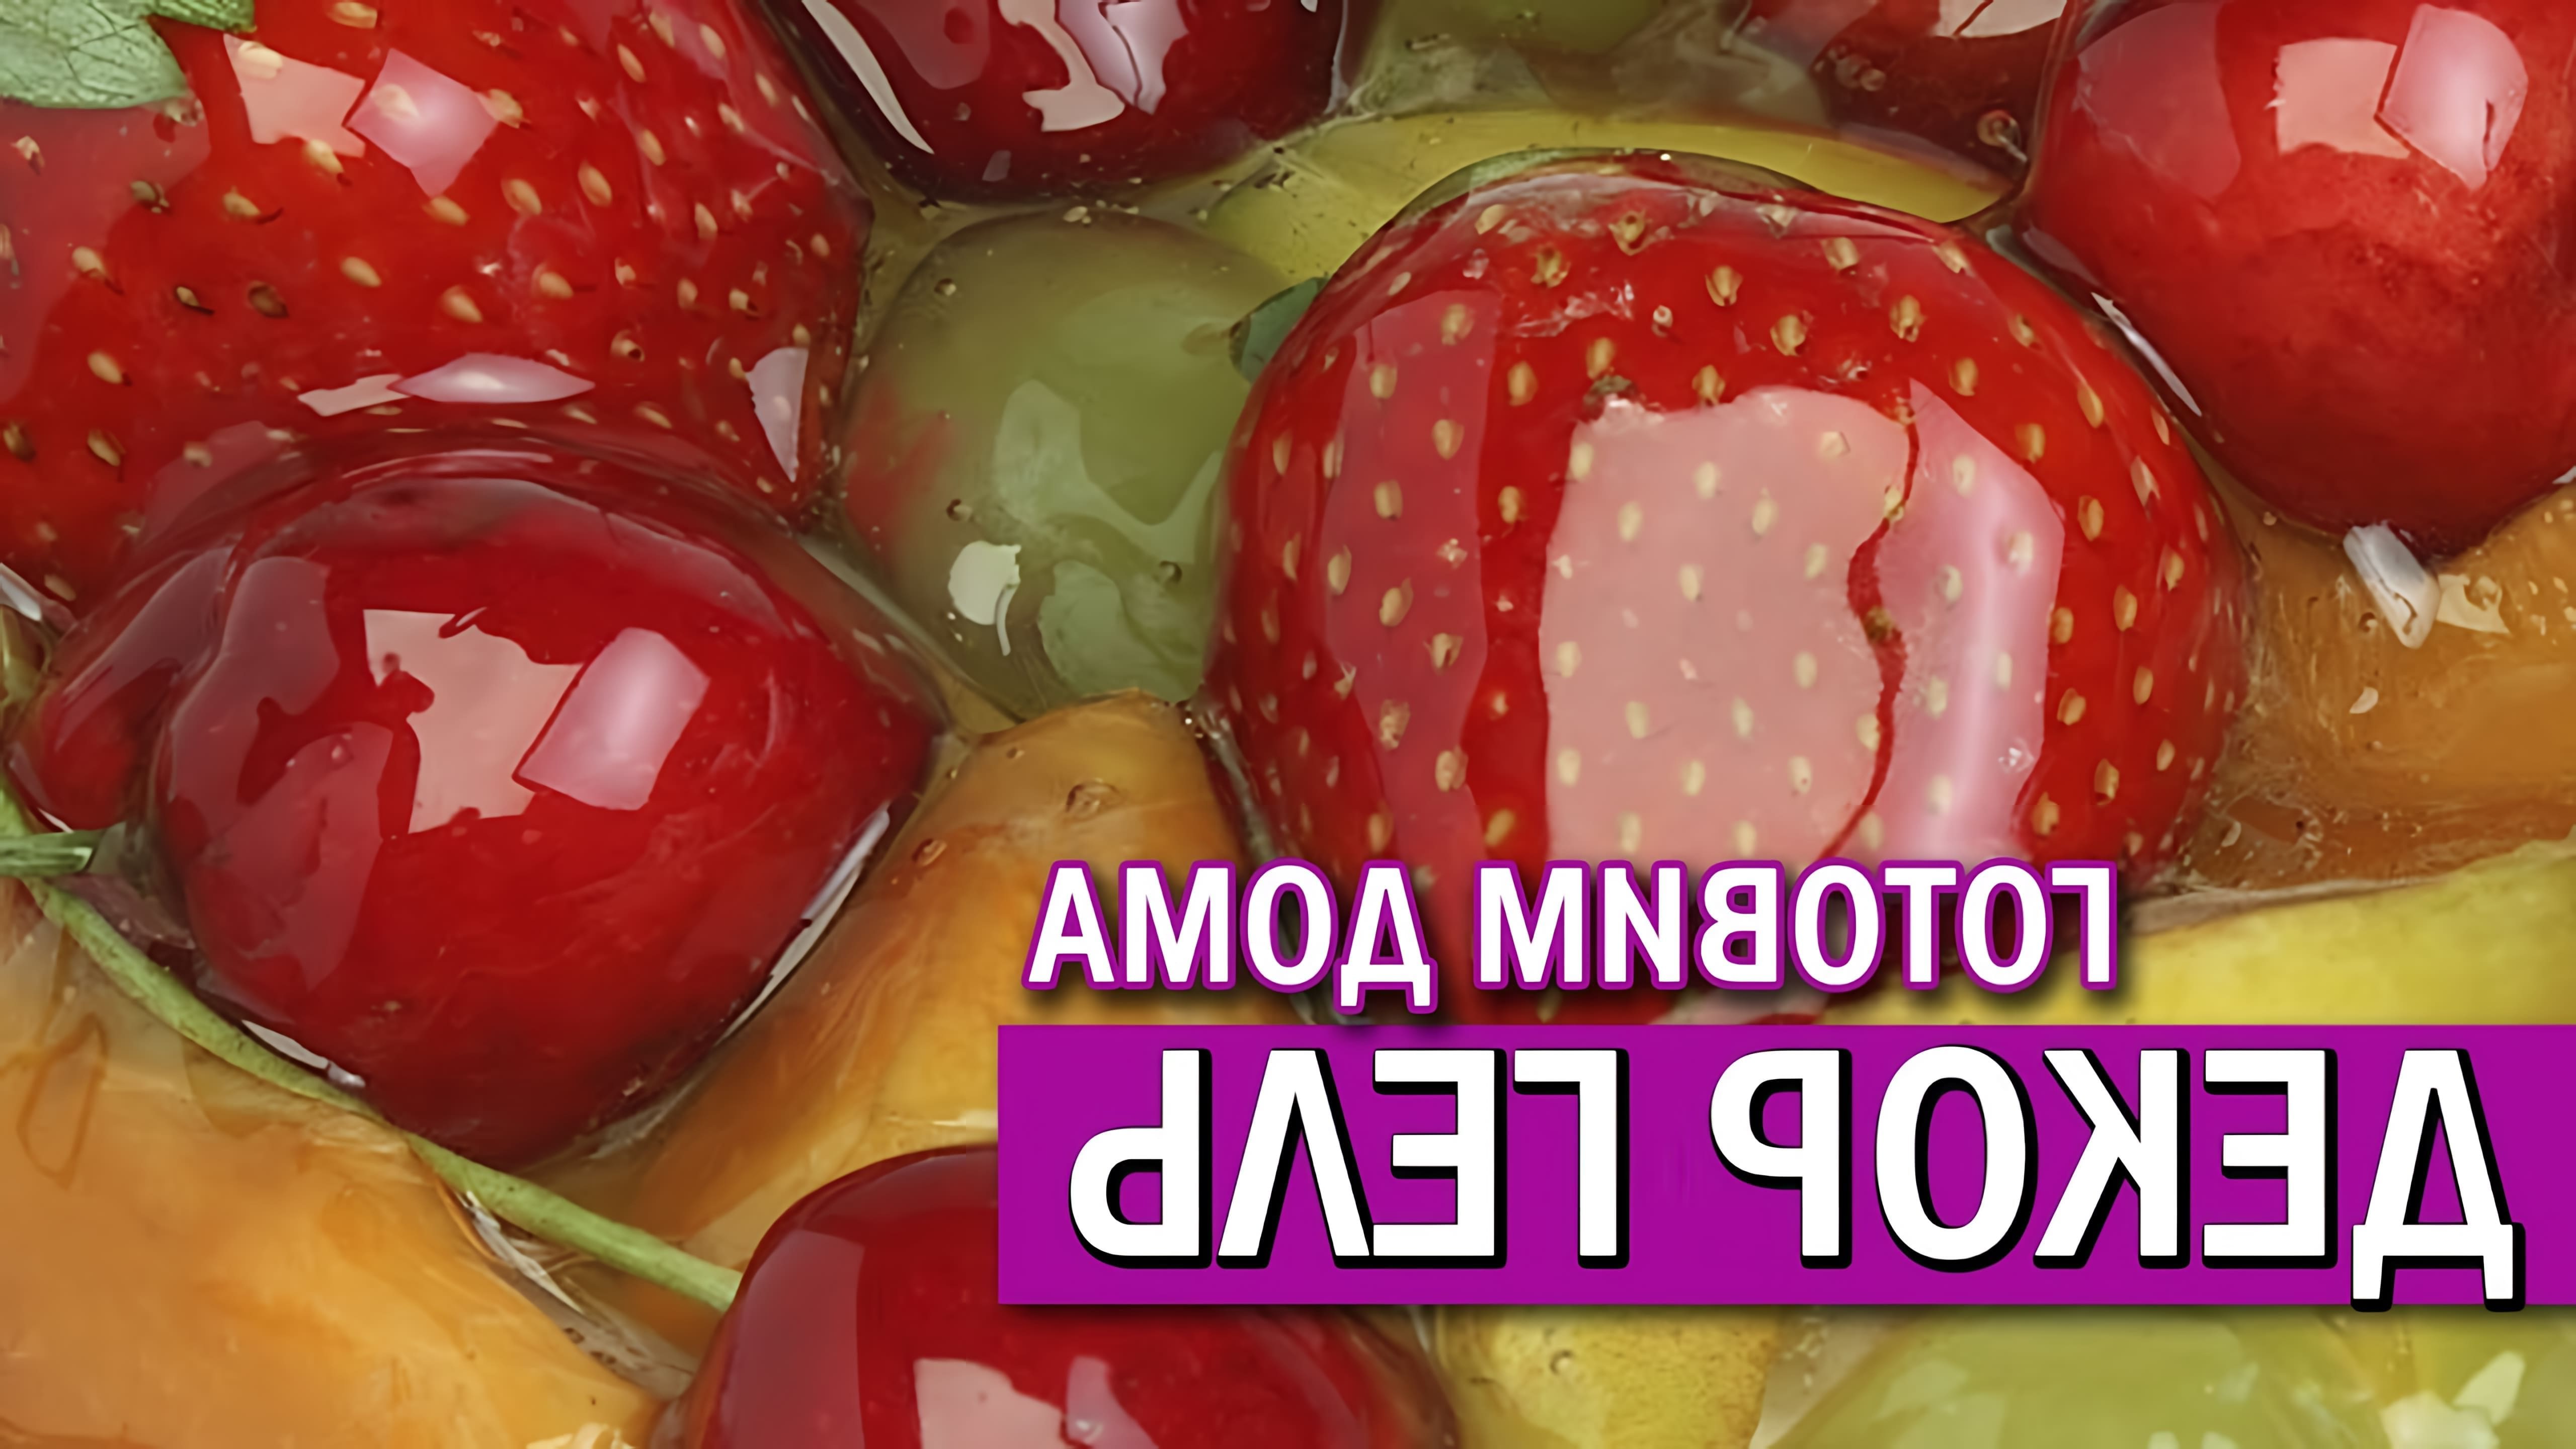 В данном видео демонстрируется рецепт приготовления декор геля, который можно использовать для покрытия вафельных картинок, фруктов и ягод, а также для заливки открытых ягодных пирогов